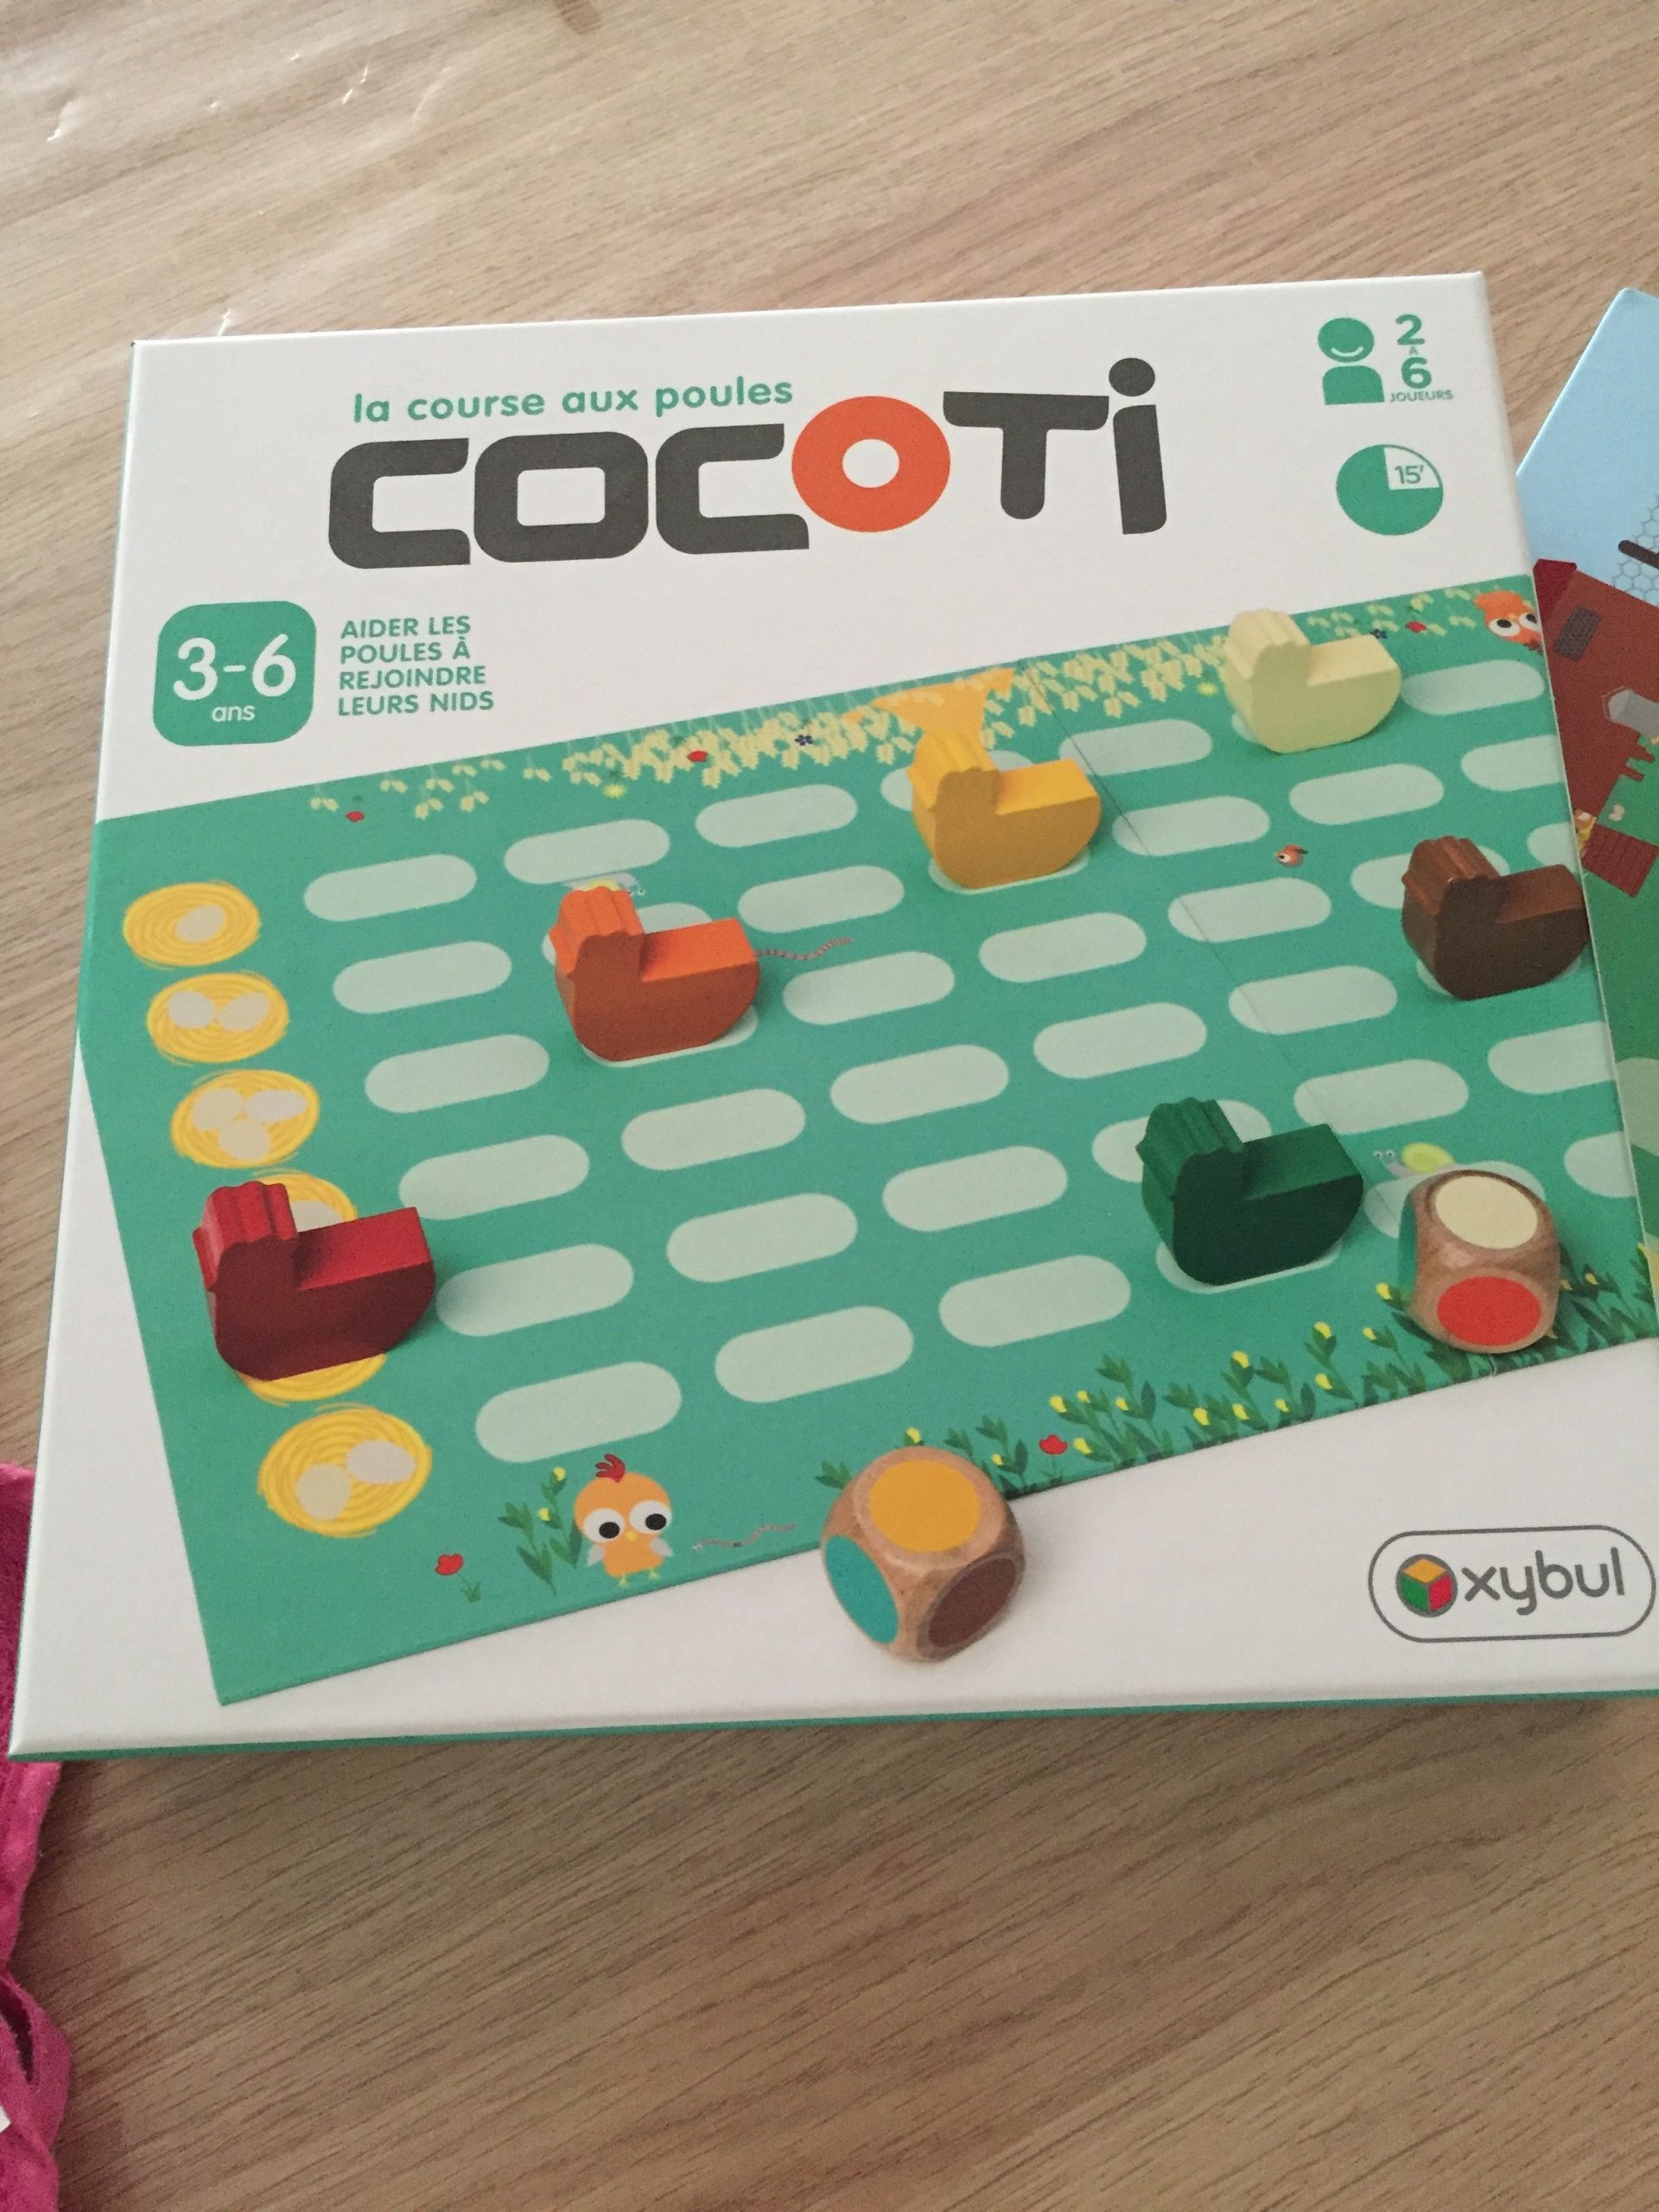 La Course Aux Poules Cocoti | Jeux Coopératifs, Jouet Enfant concernant Jeux De Course Pour Enfants